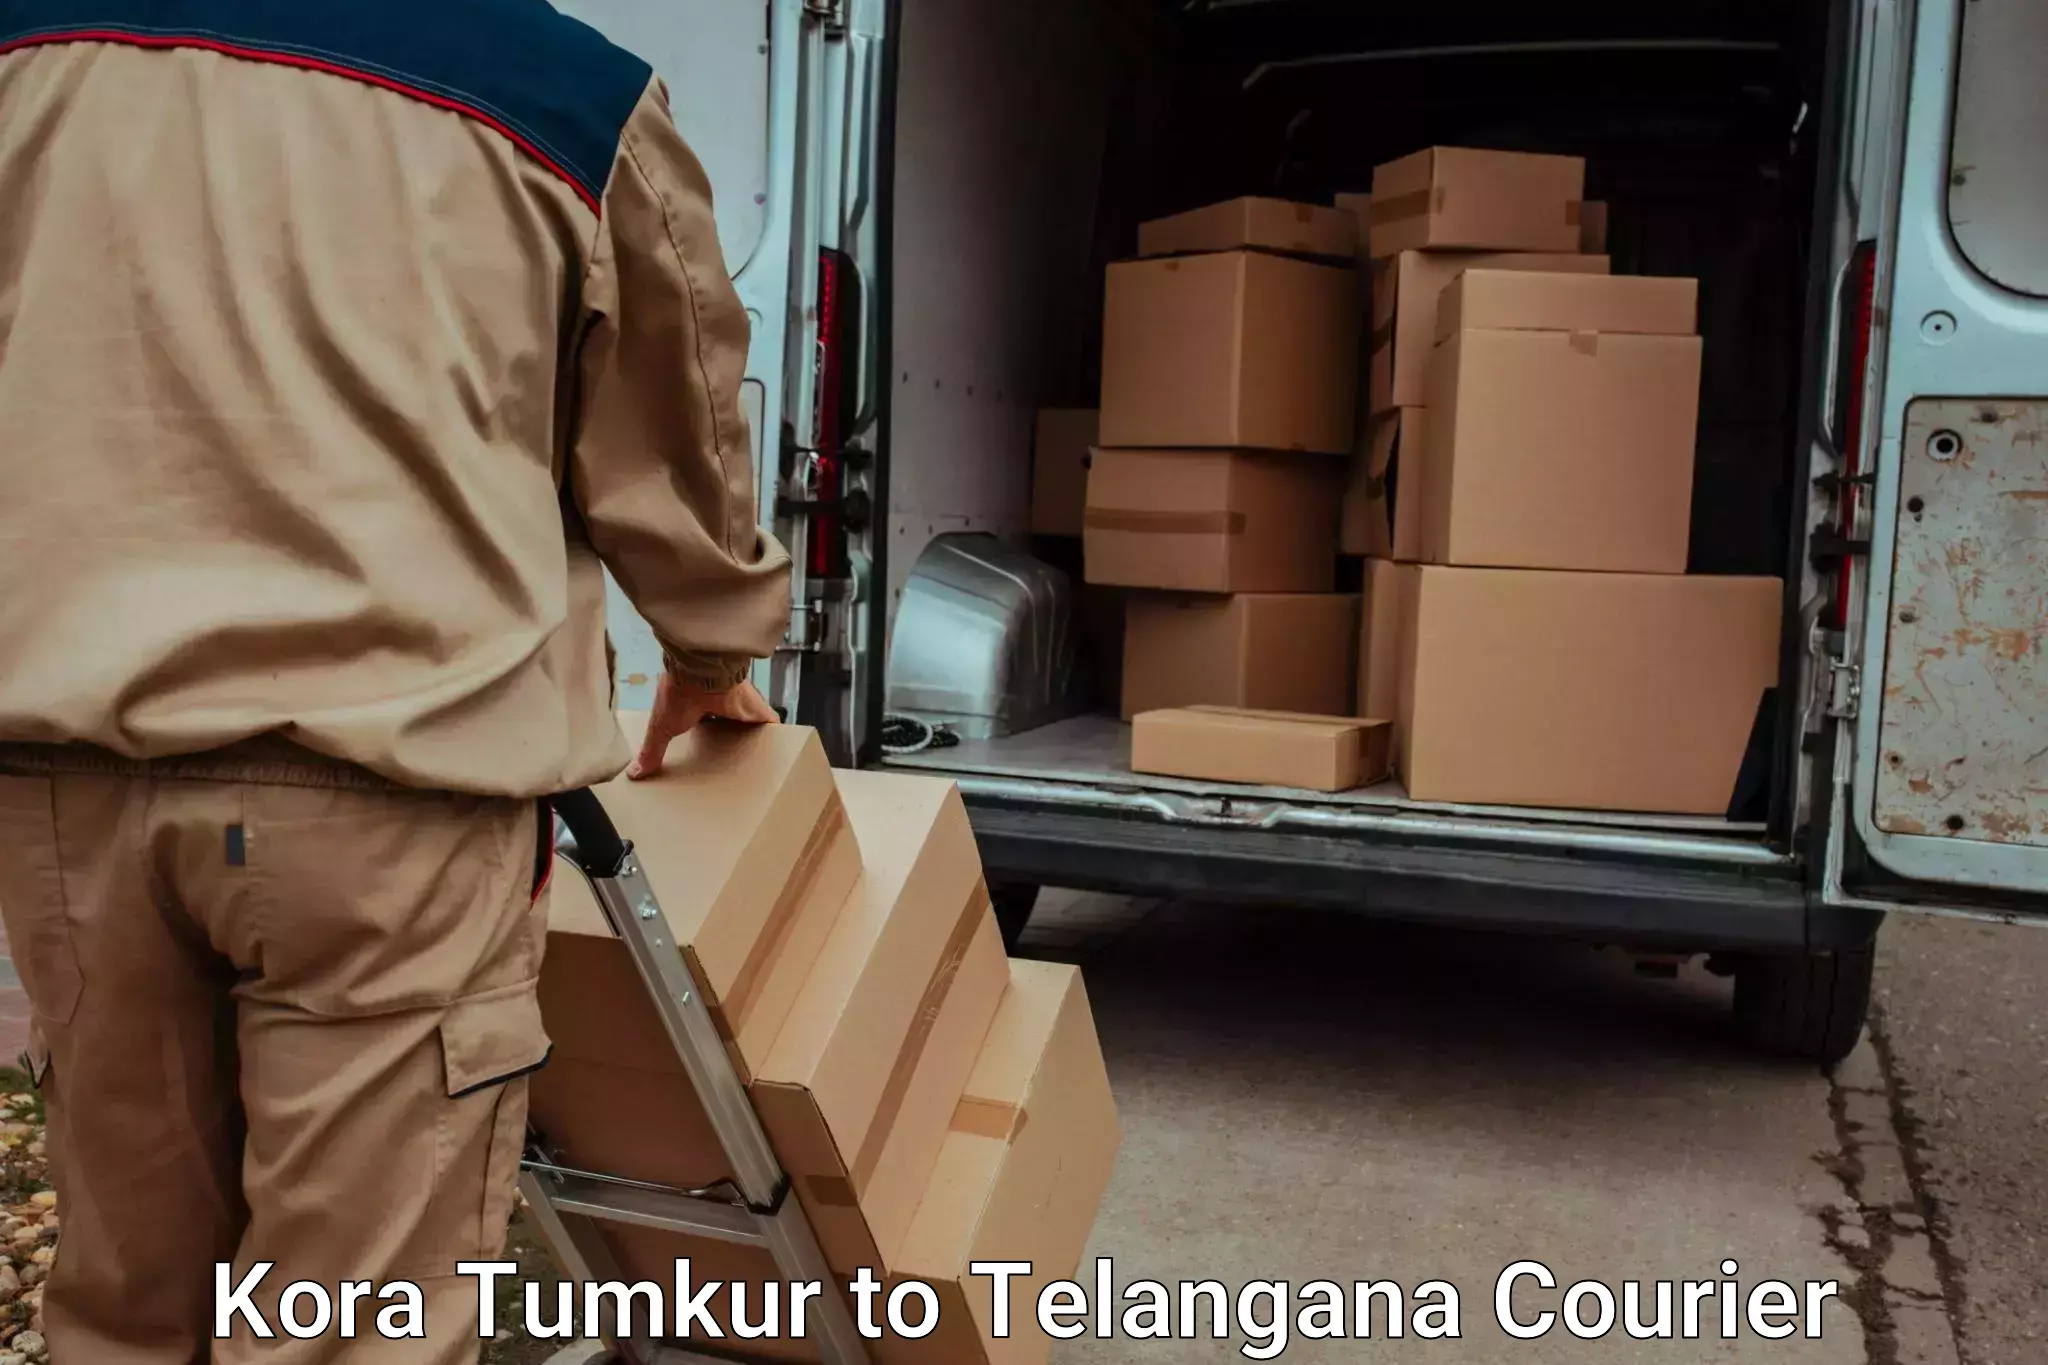 Household transport services Kora Tumkur to Dharmapuri Jagtial